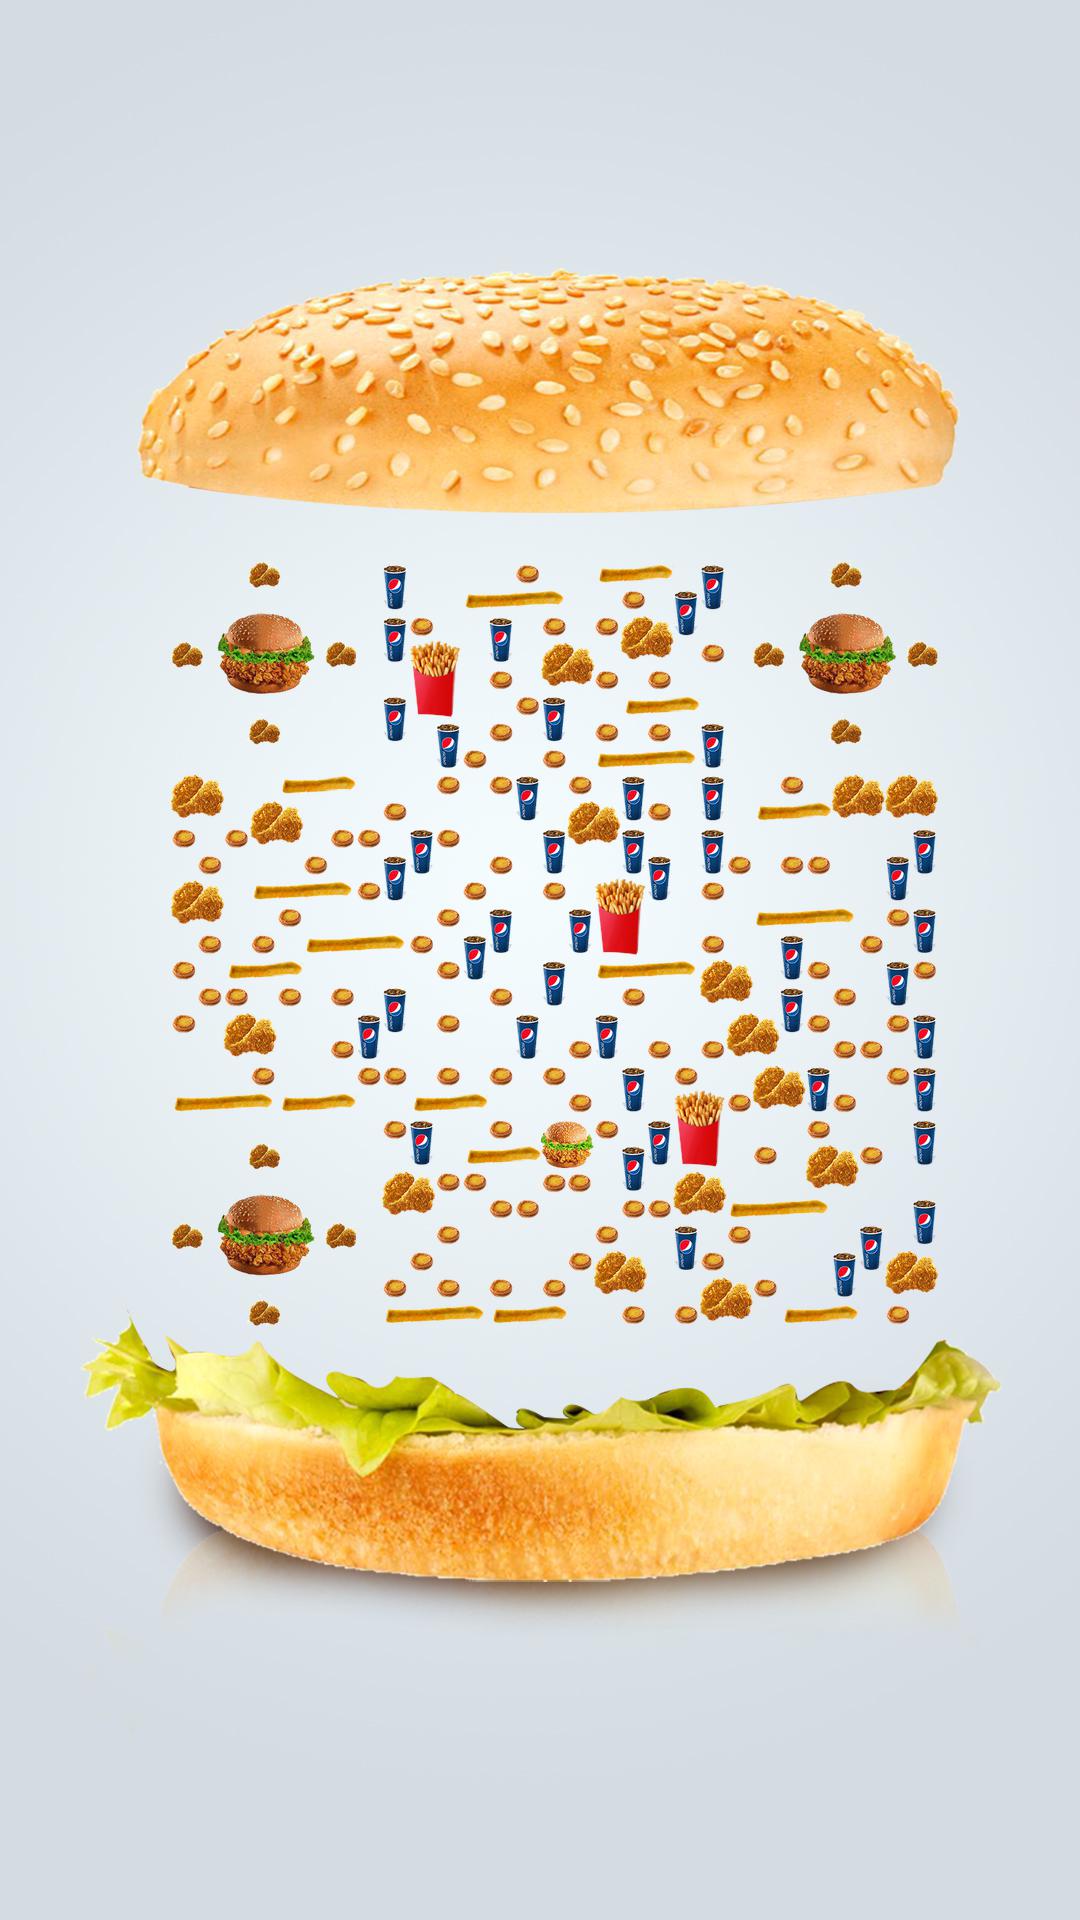 炸鸡汉堡可乐薯条休闲快餐小食叠叠高二维码生成器-平面静态-手机海报